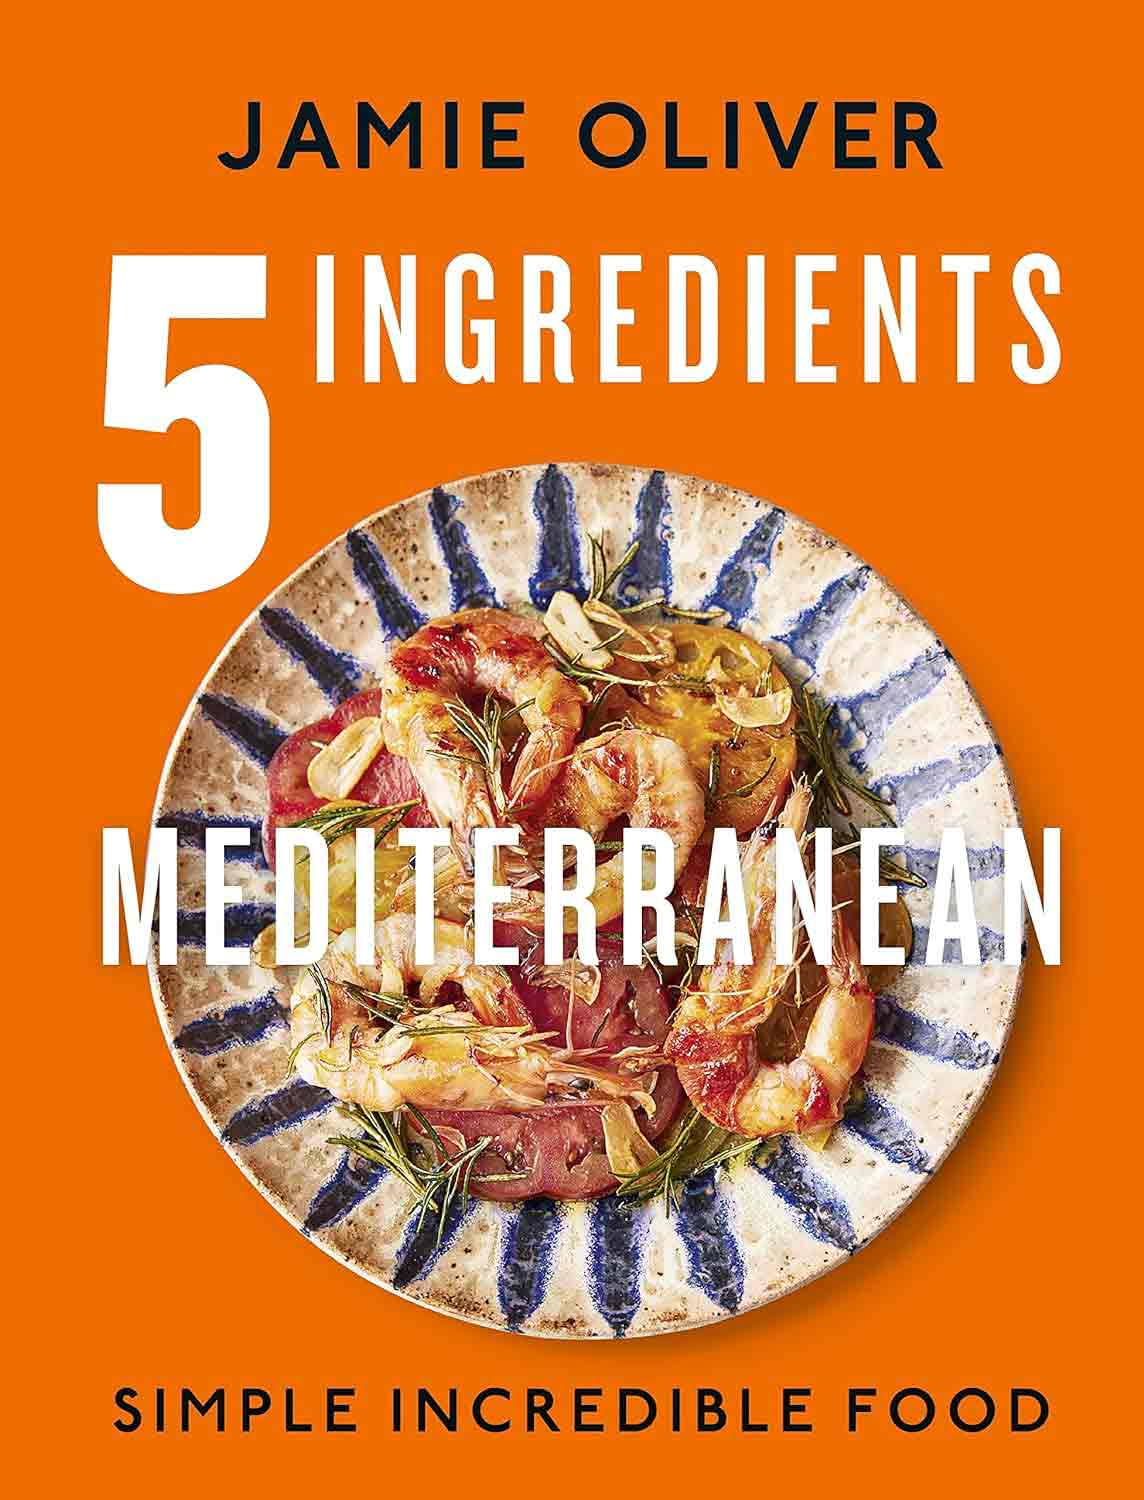 Jamie Oliver 5 ingredients mediterranean cook book cover